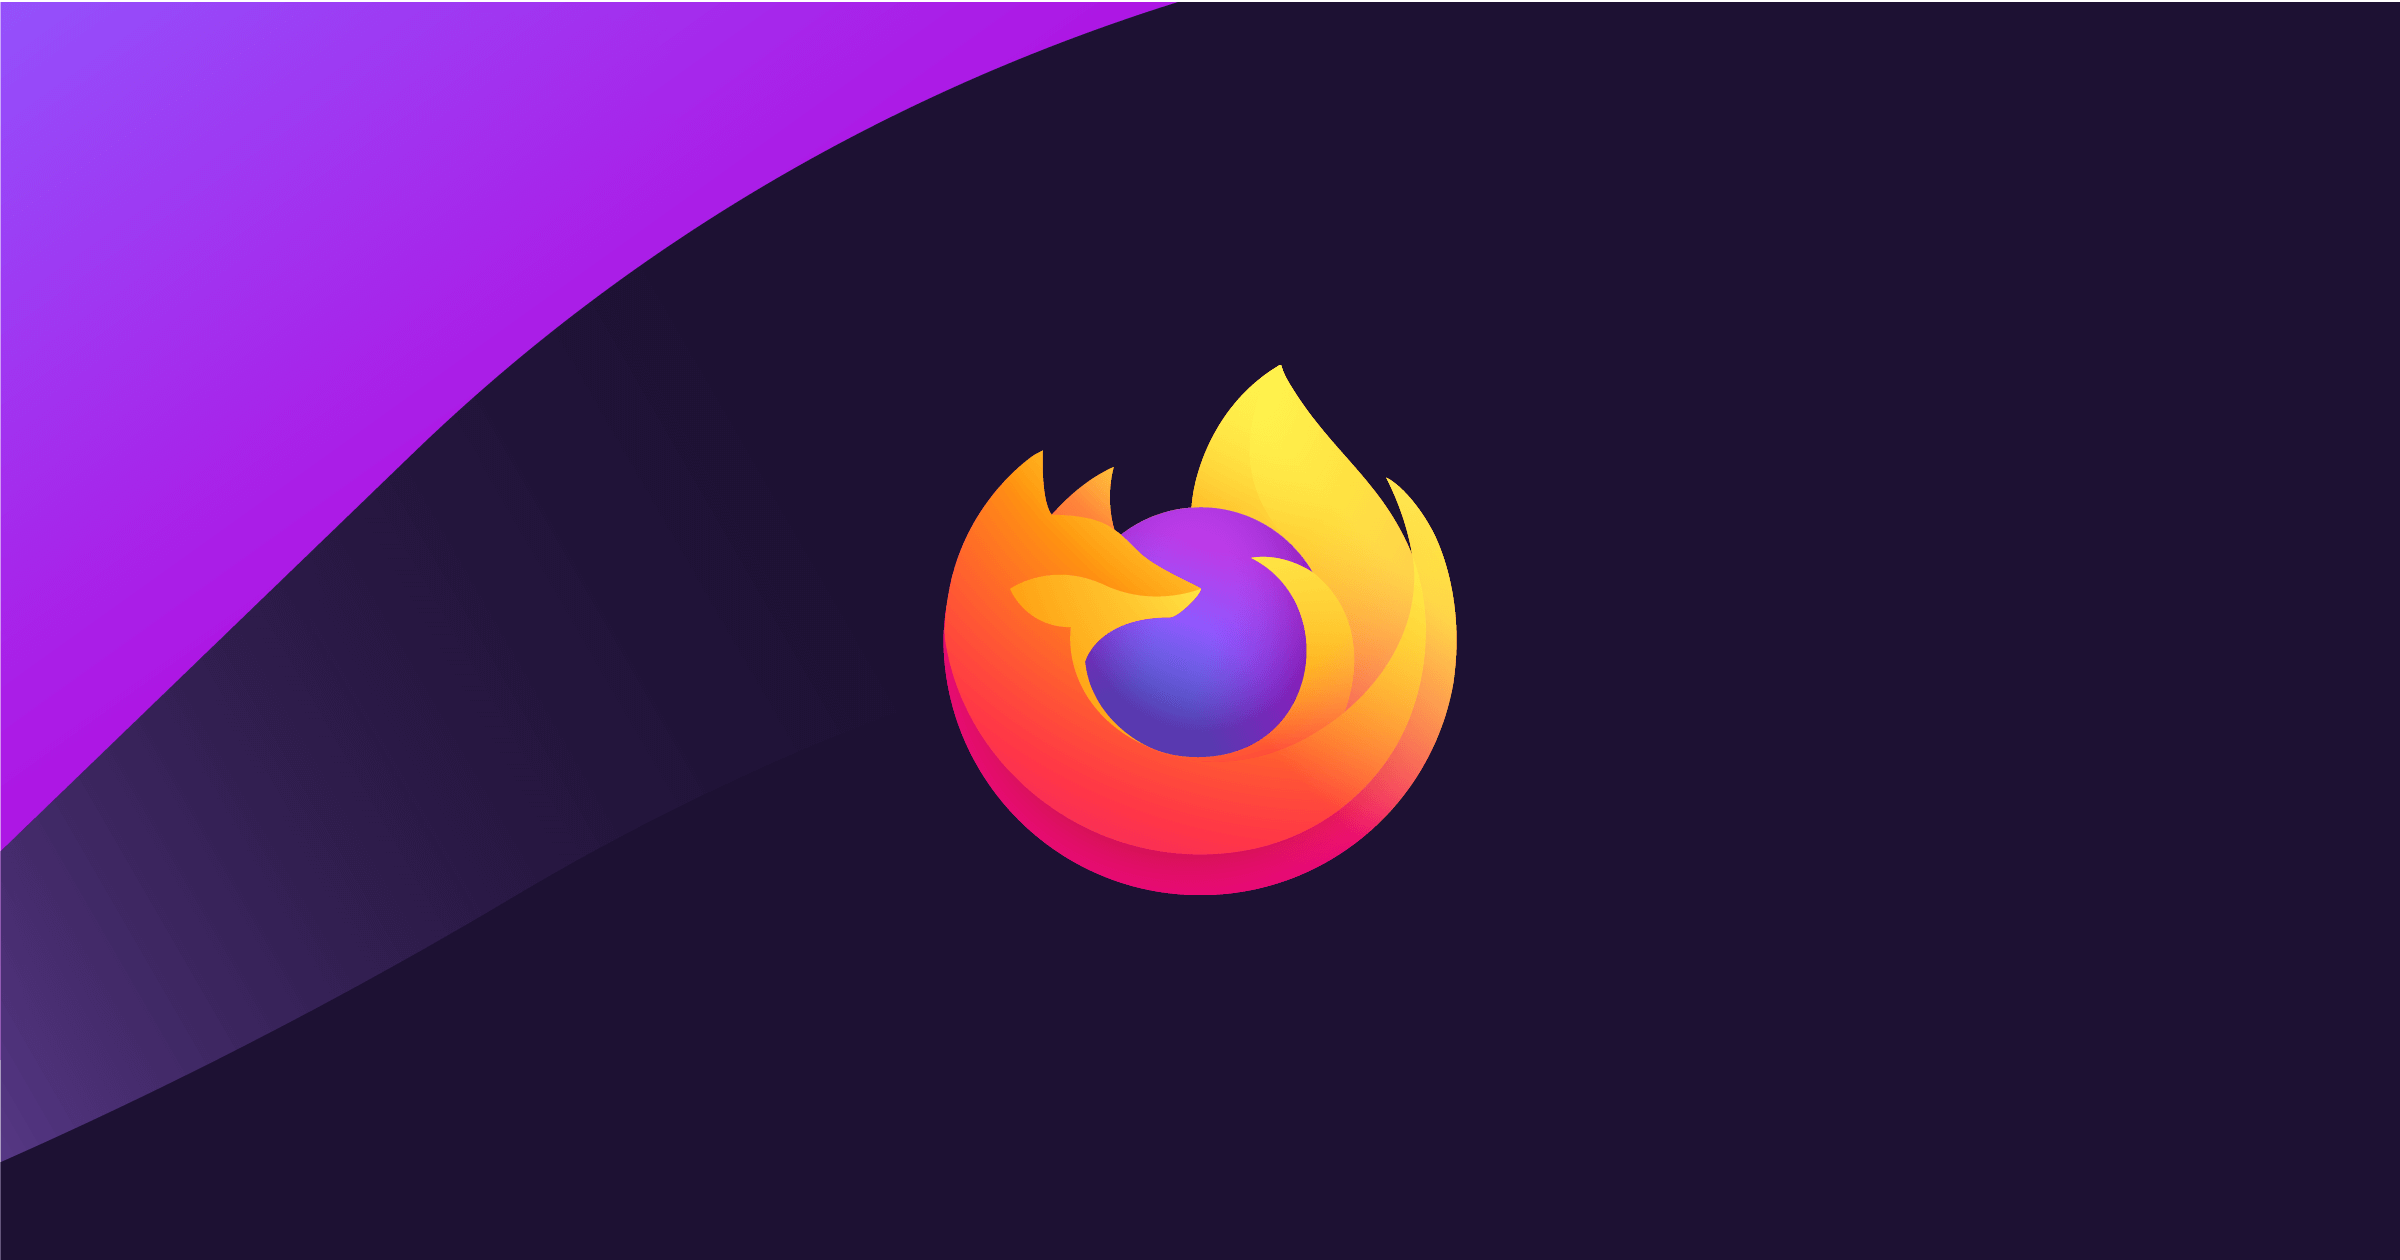 Firefox lucha por sobrevivir y triunfar ante la competencia de los gigantes tecnológicos